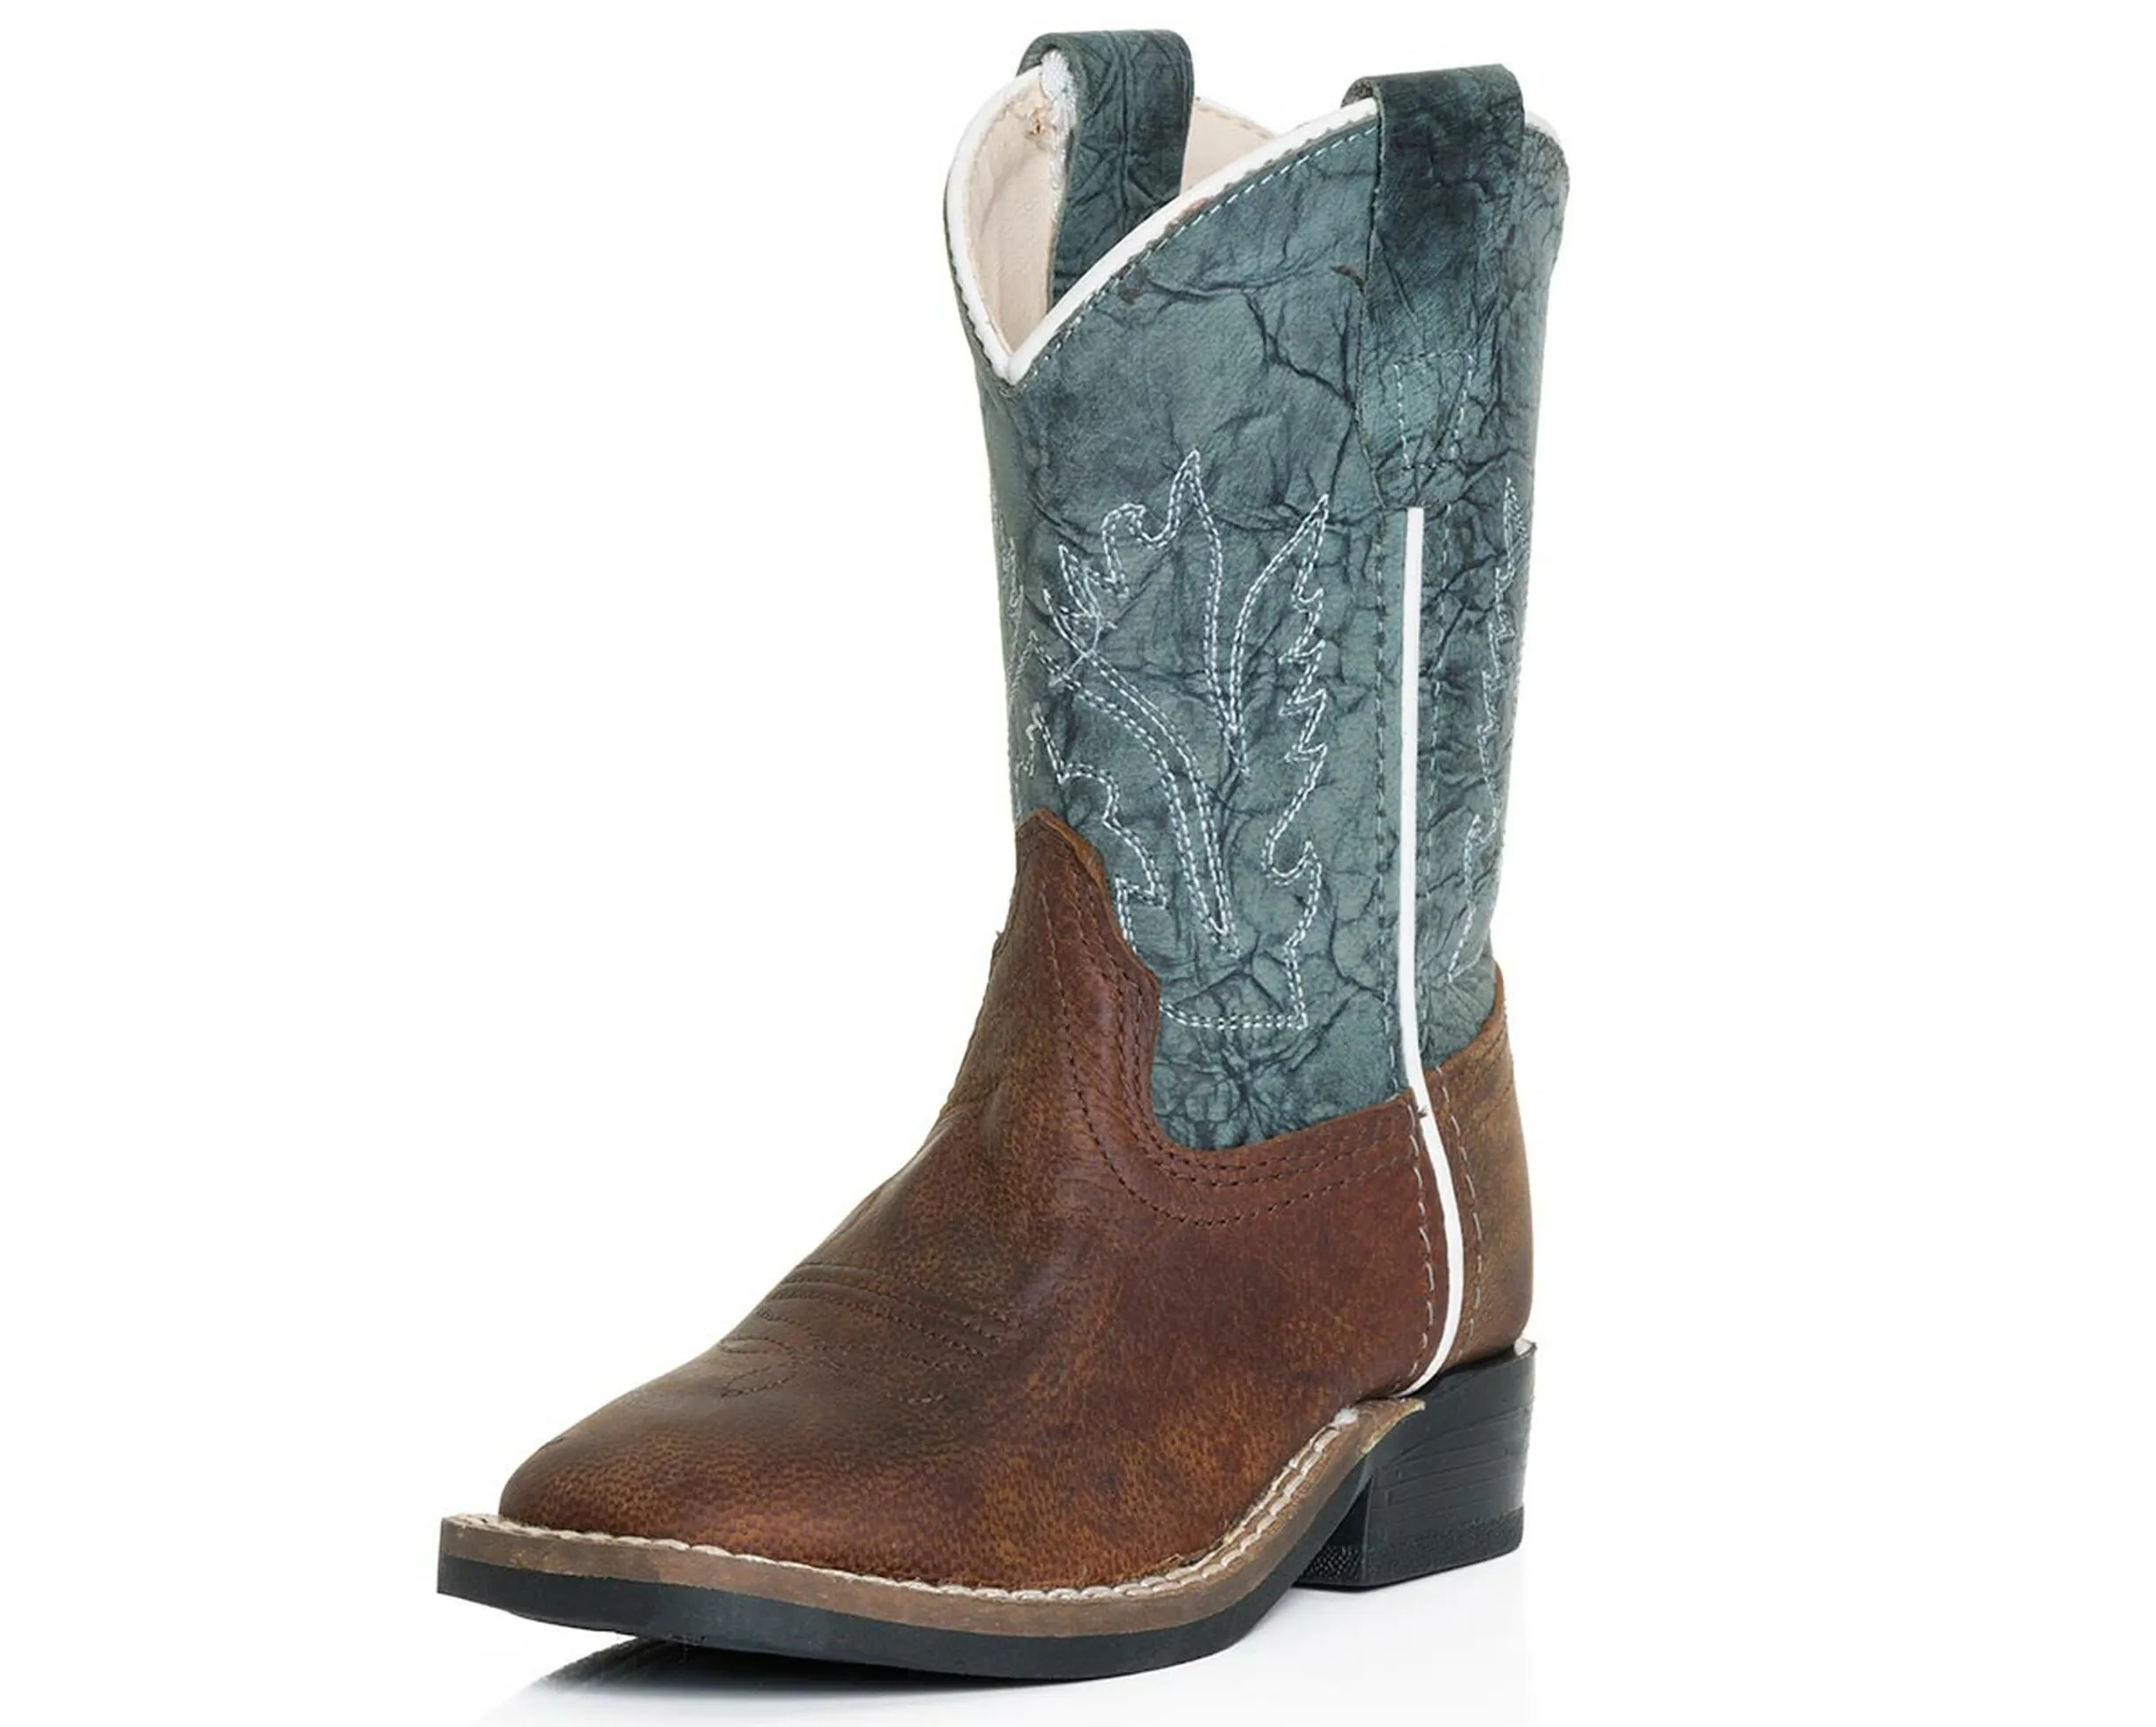 Stivali da Cowboy, vera pelle ricamata di alta qualità, stivali da Cowboy personalizzati per uomo